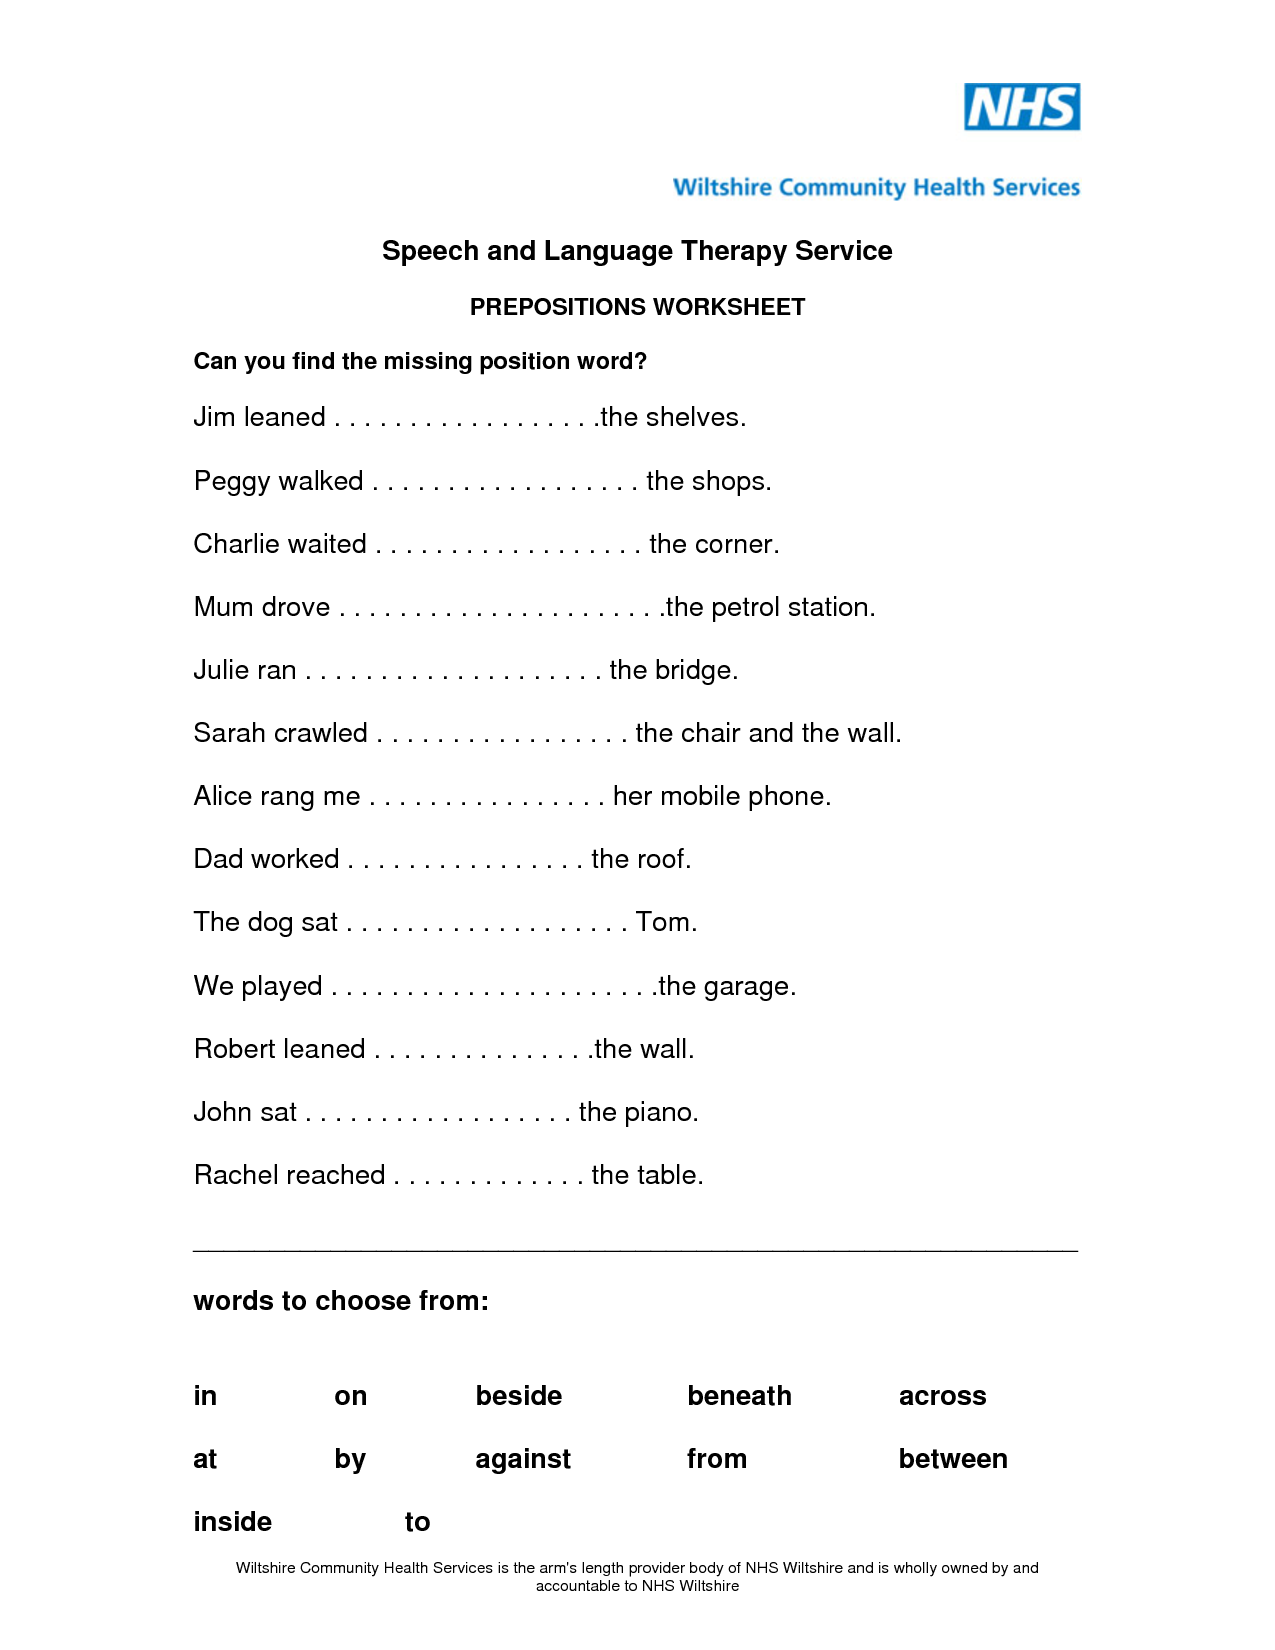 Preposition Worksheets PDF Image